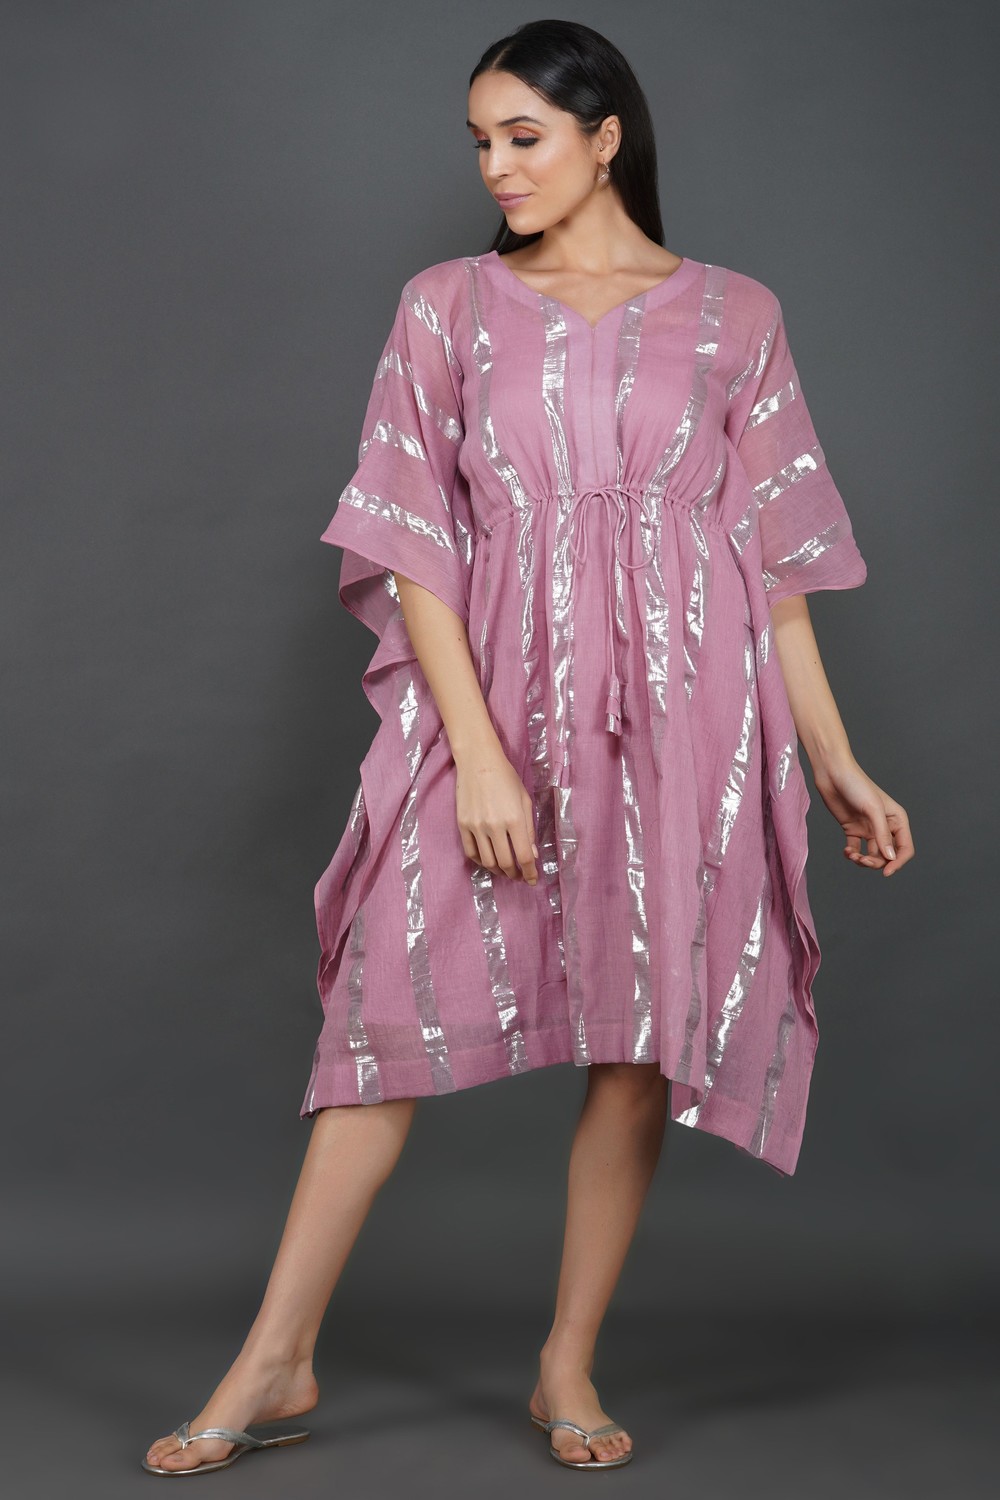 LASTINCH Onion Pink Kaftan Dress With Slip